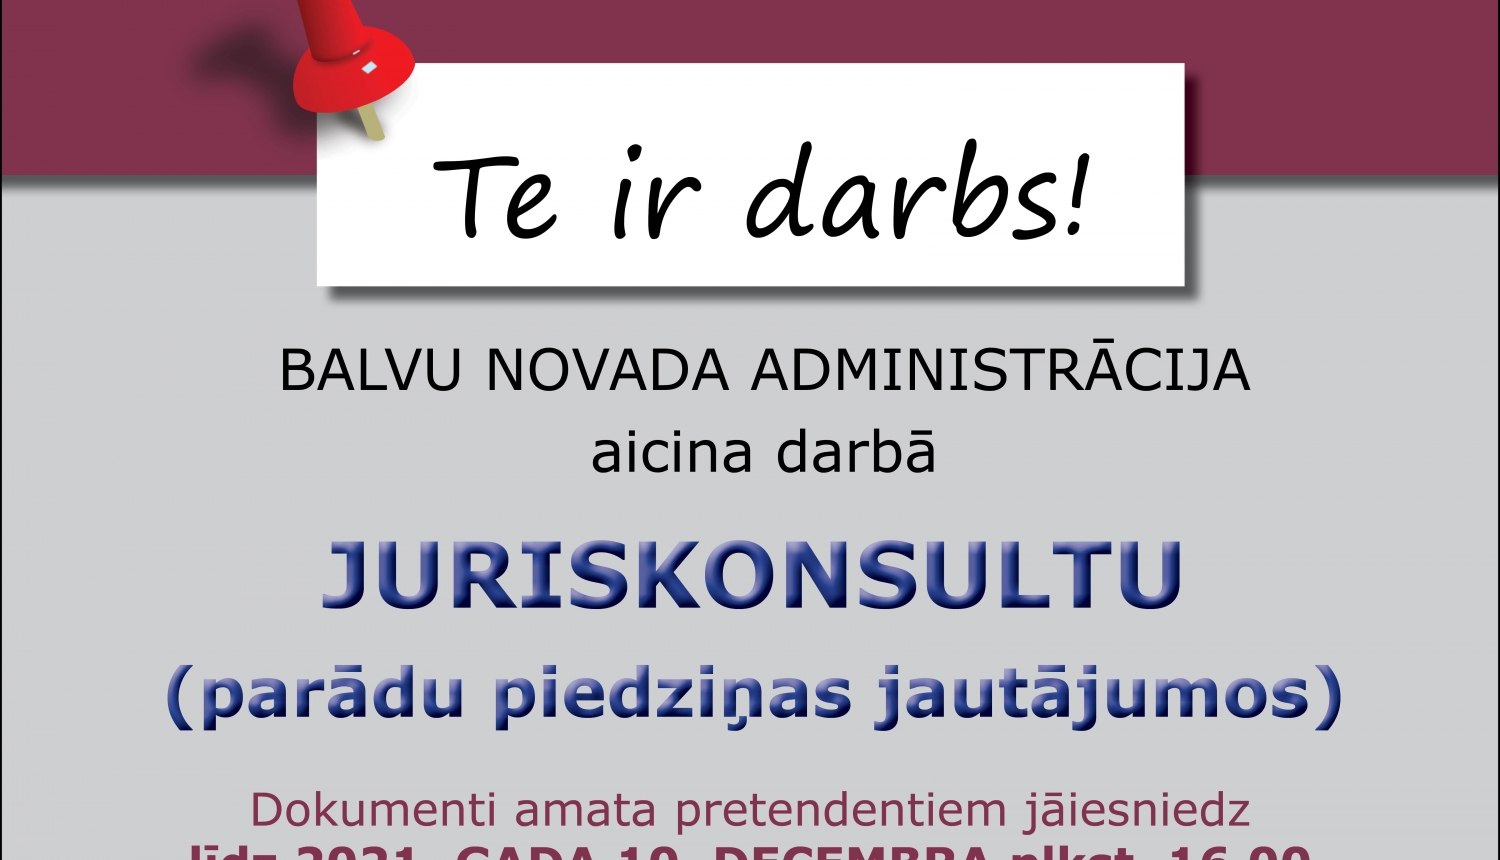 Balvu novada administrācija aicina darbā juriskonsultu (parādu piedziņas jautājumos) vakance uz nenoteiktu laiku (0,75 amata likme)